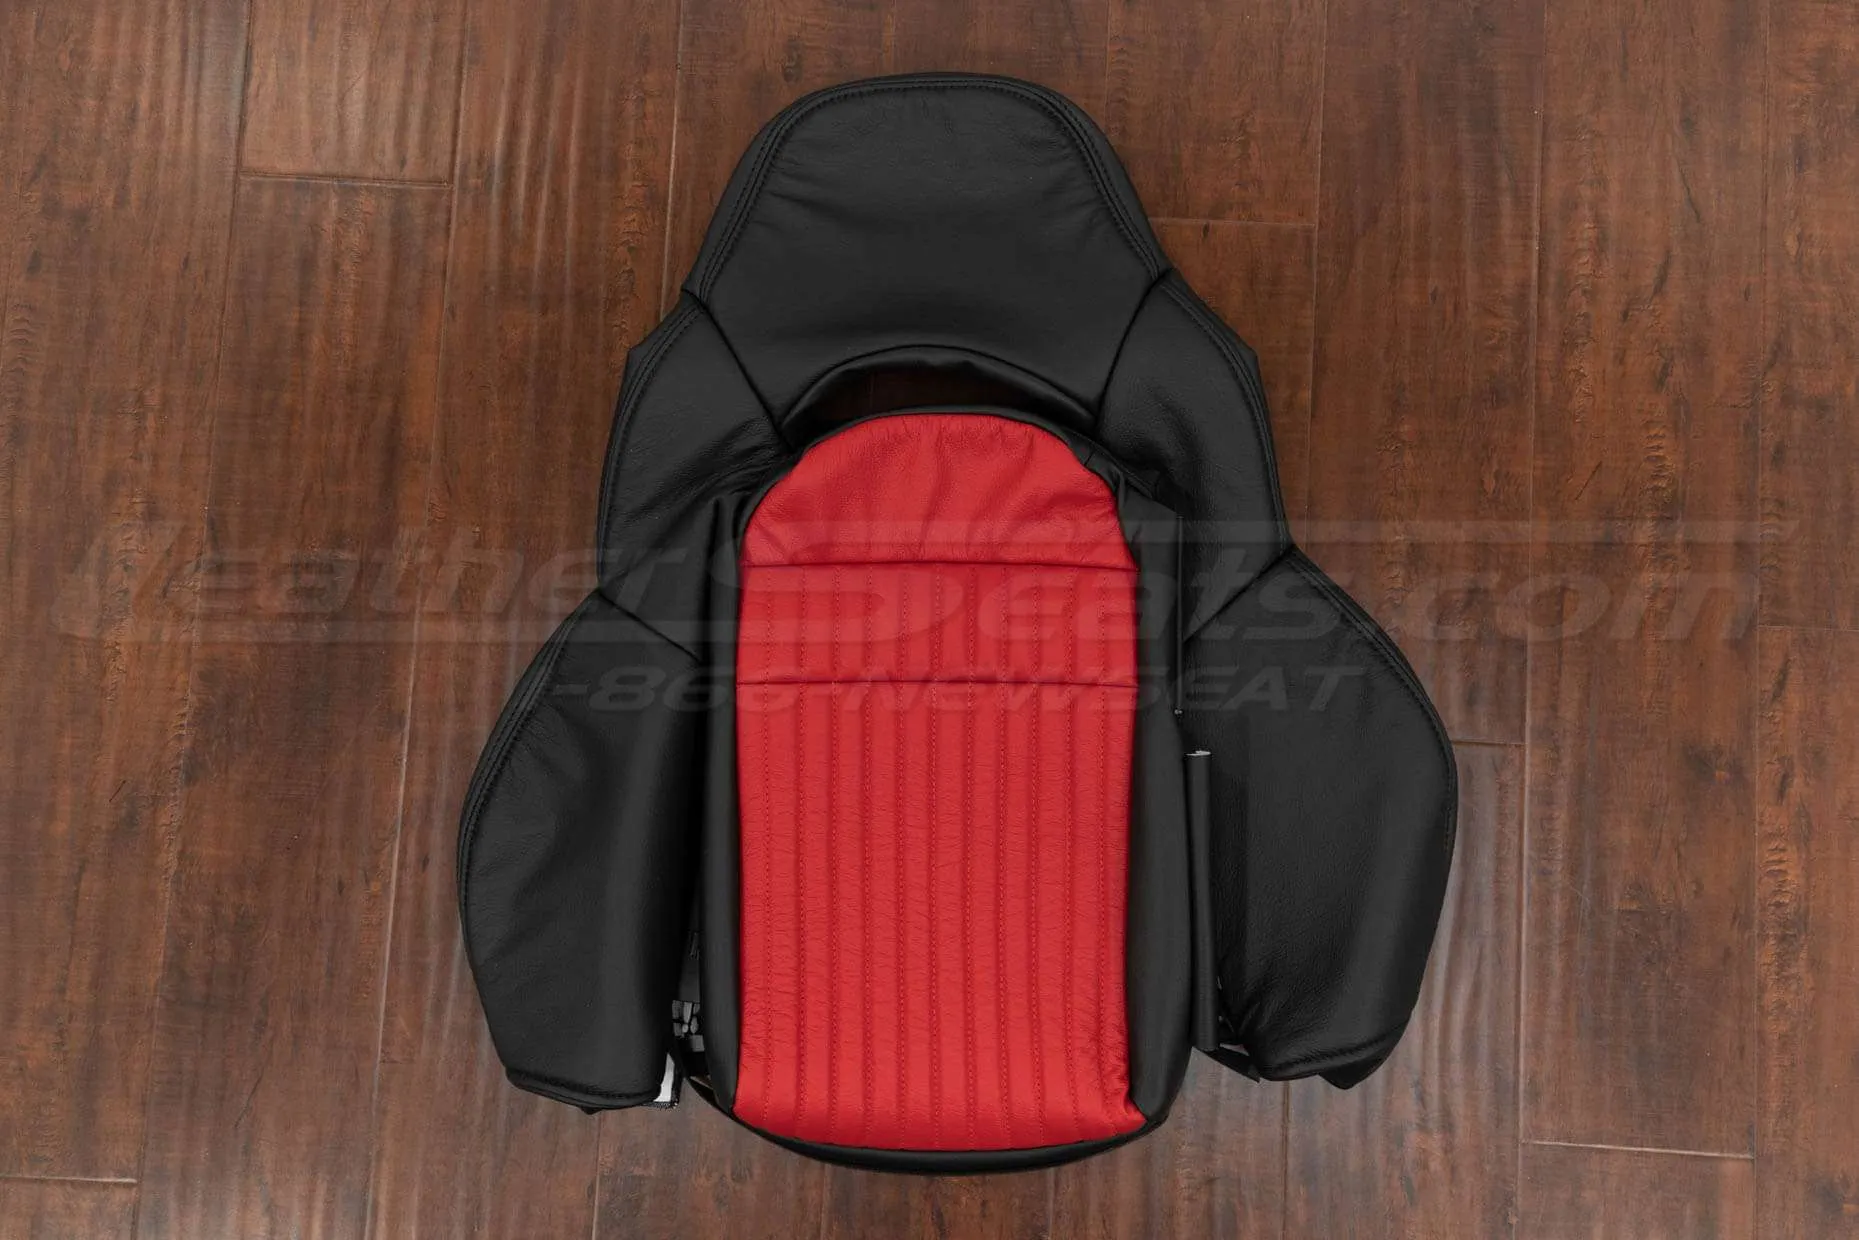 Chevrolet C5 Corvette Front backrest upholstery - Black & Bright Red